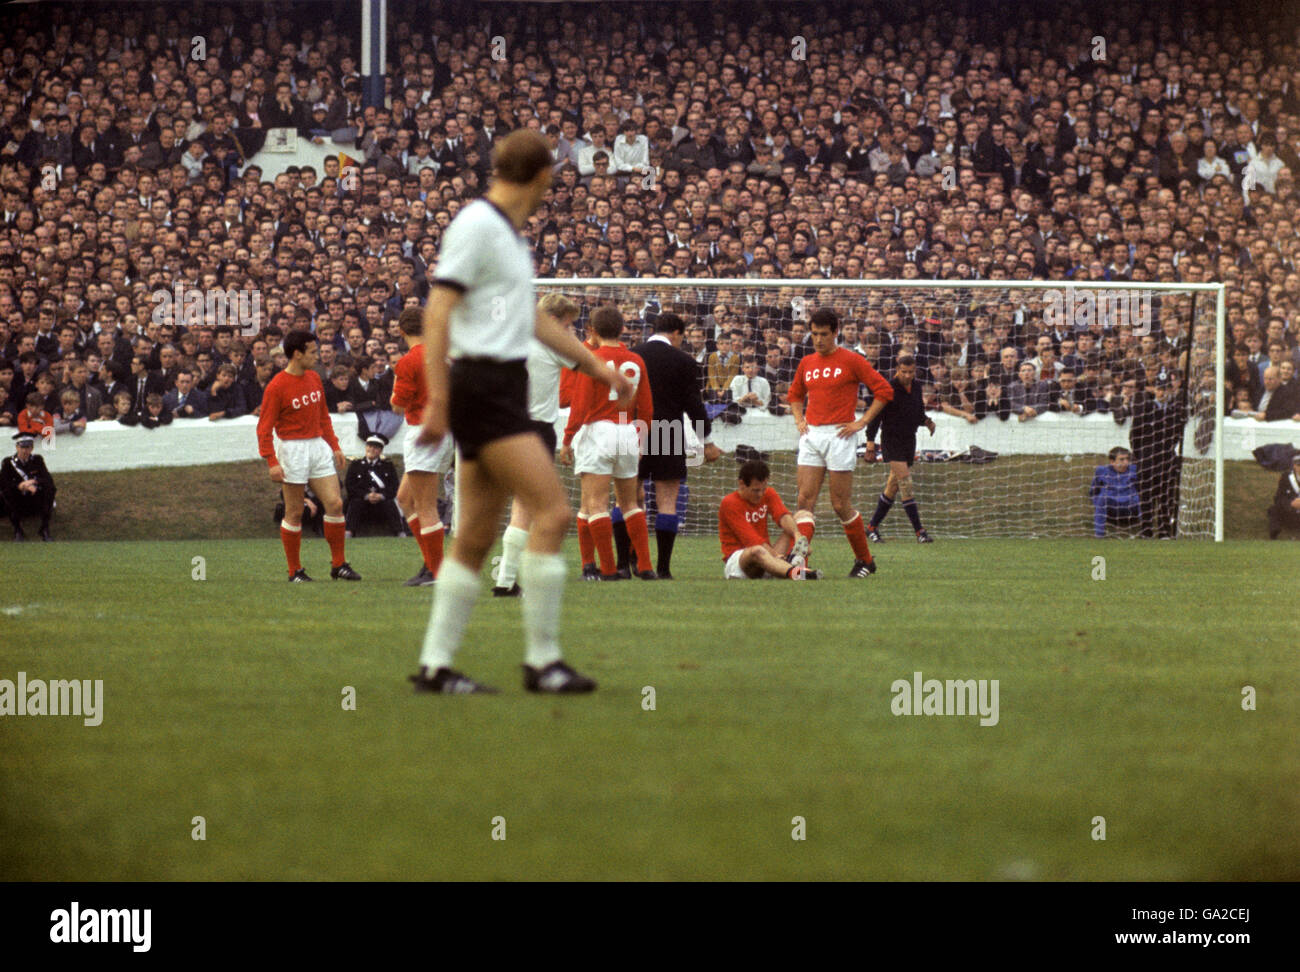 Calcio - Coppa del mondo Inghilterra 1966 - Semifinale - Germania Ovest / URSS - Goodison Park Liverpool. I giocatori dell'URSS guardano come un compagno di squadra è aiutato dai giocatori addestratori includono Khusainov (15) e Banishevsky (18) Foto Stock